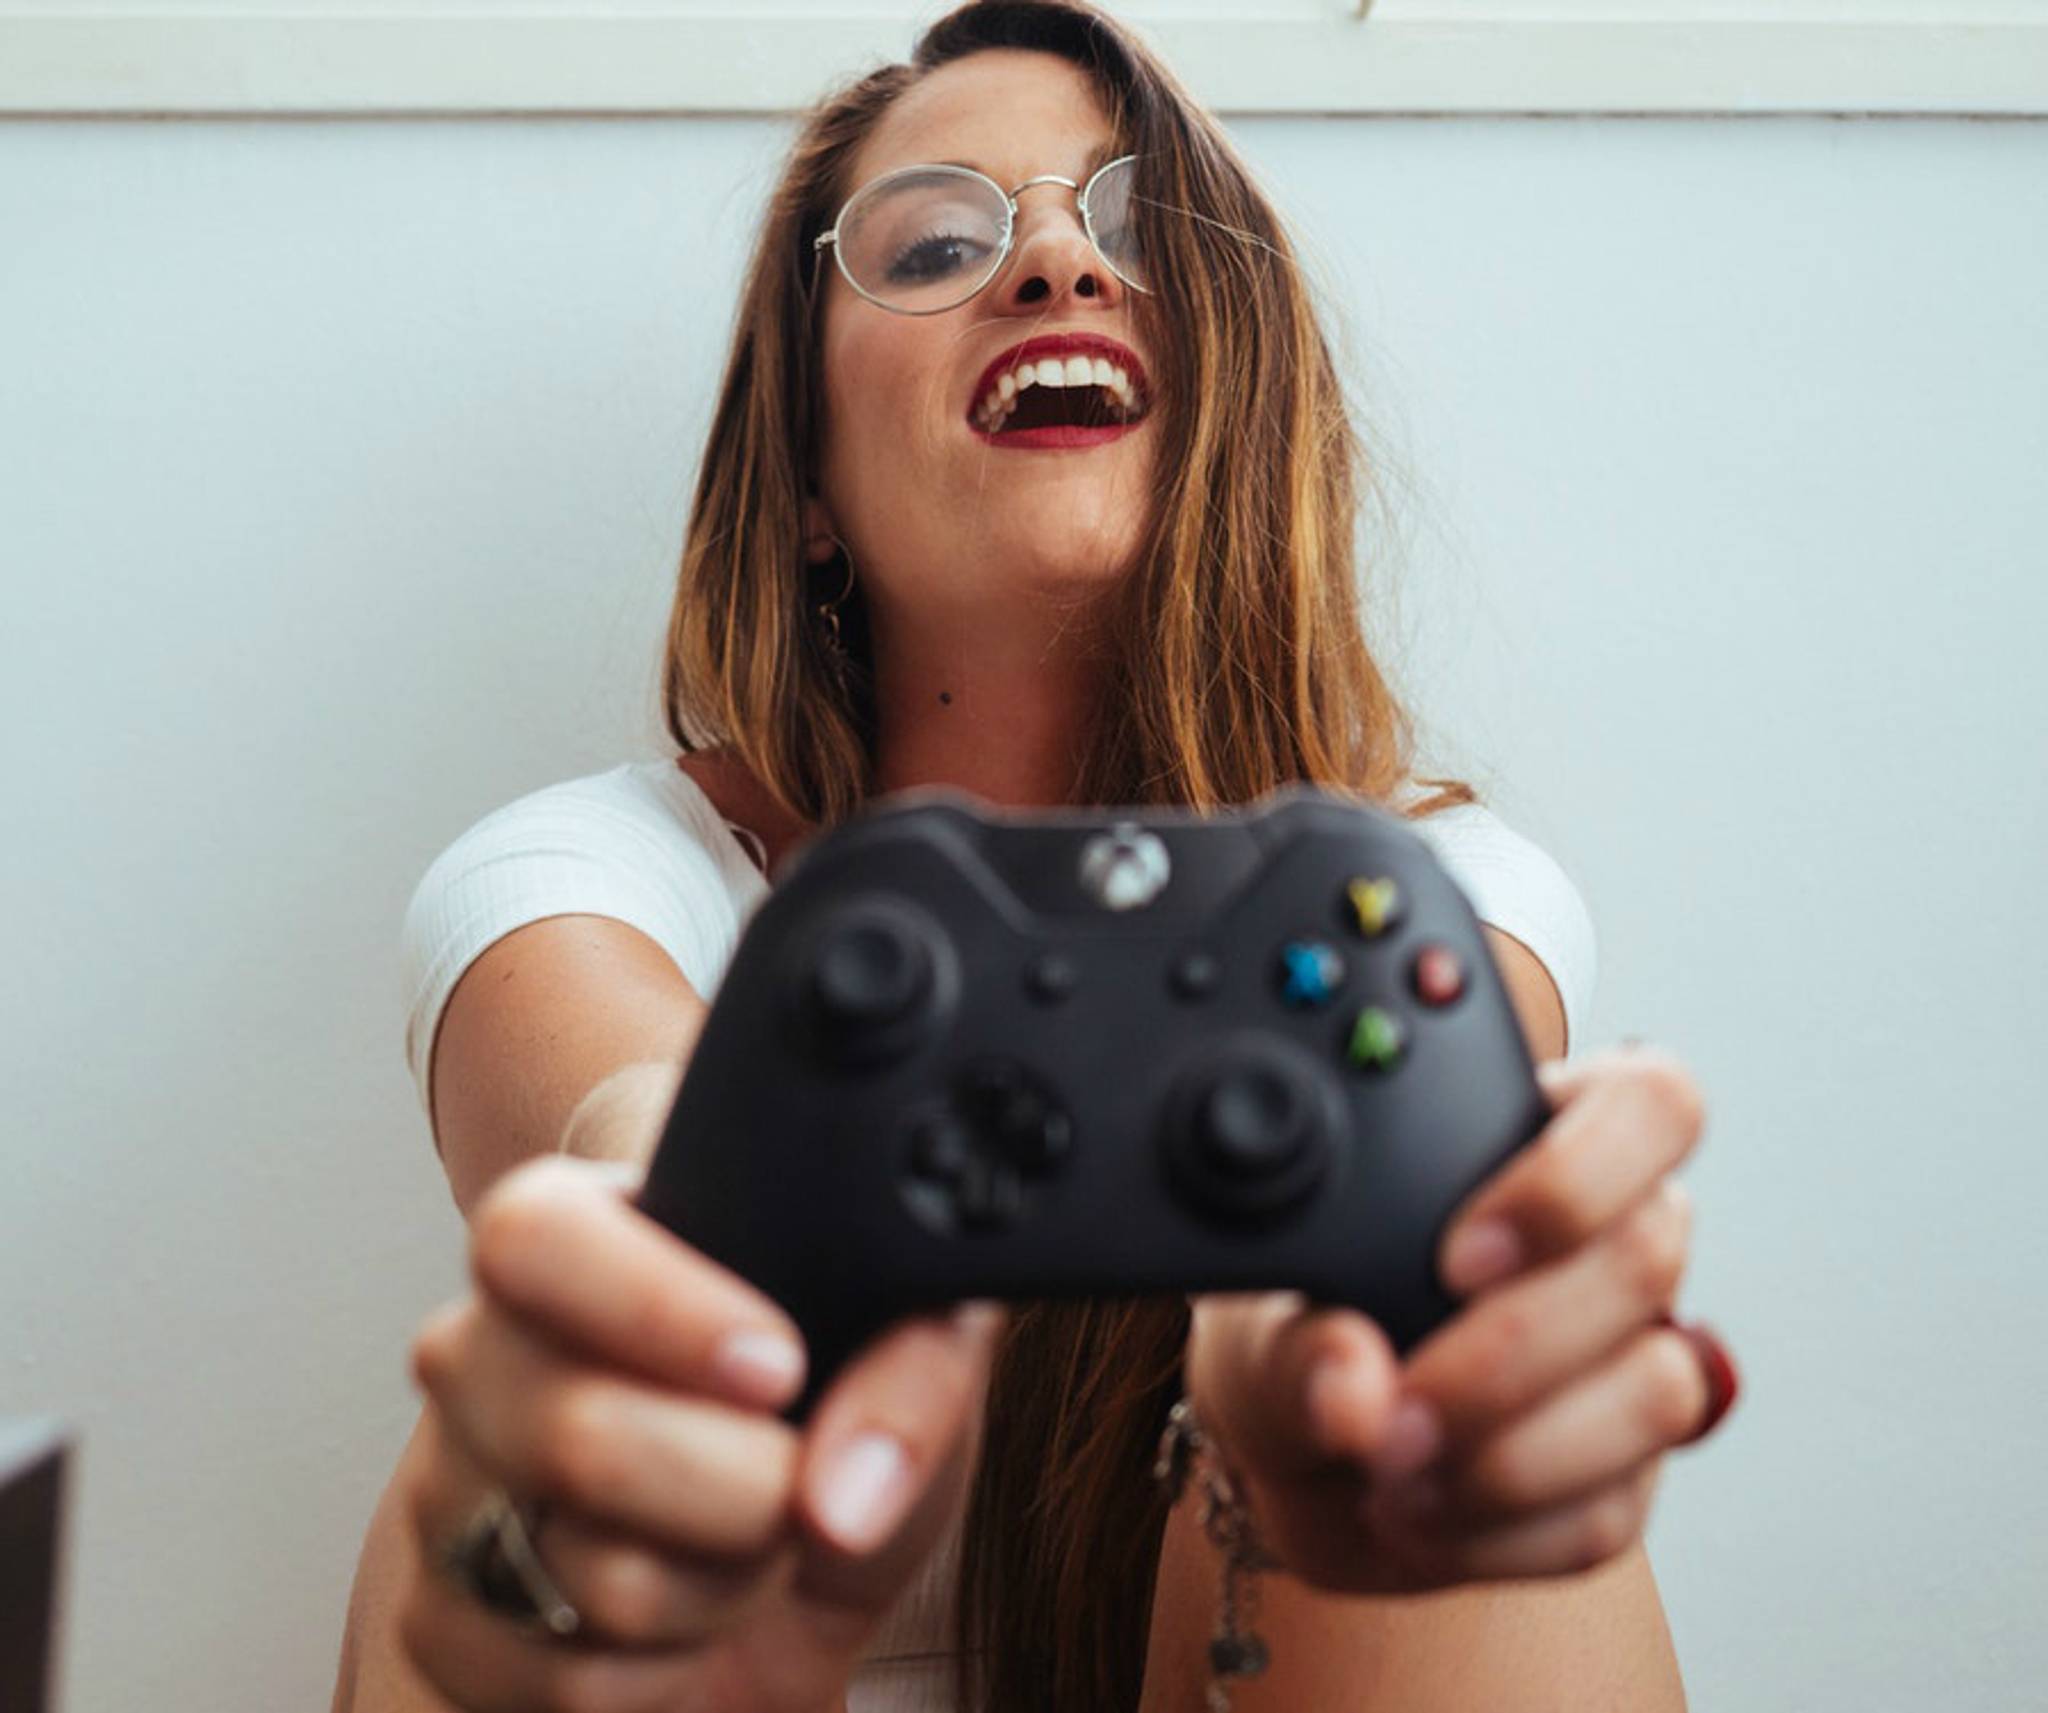 Female influencers drive rise in Gen Z 'girl gamer' culture